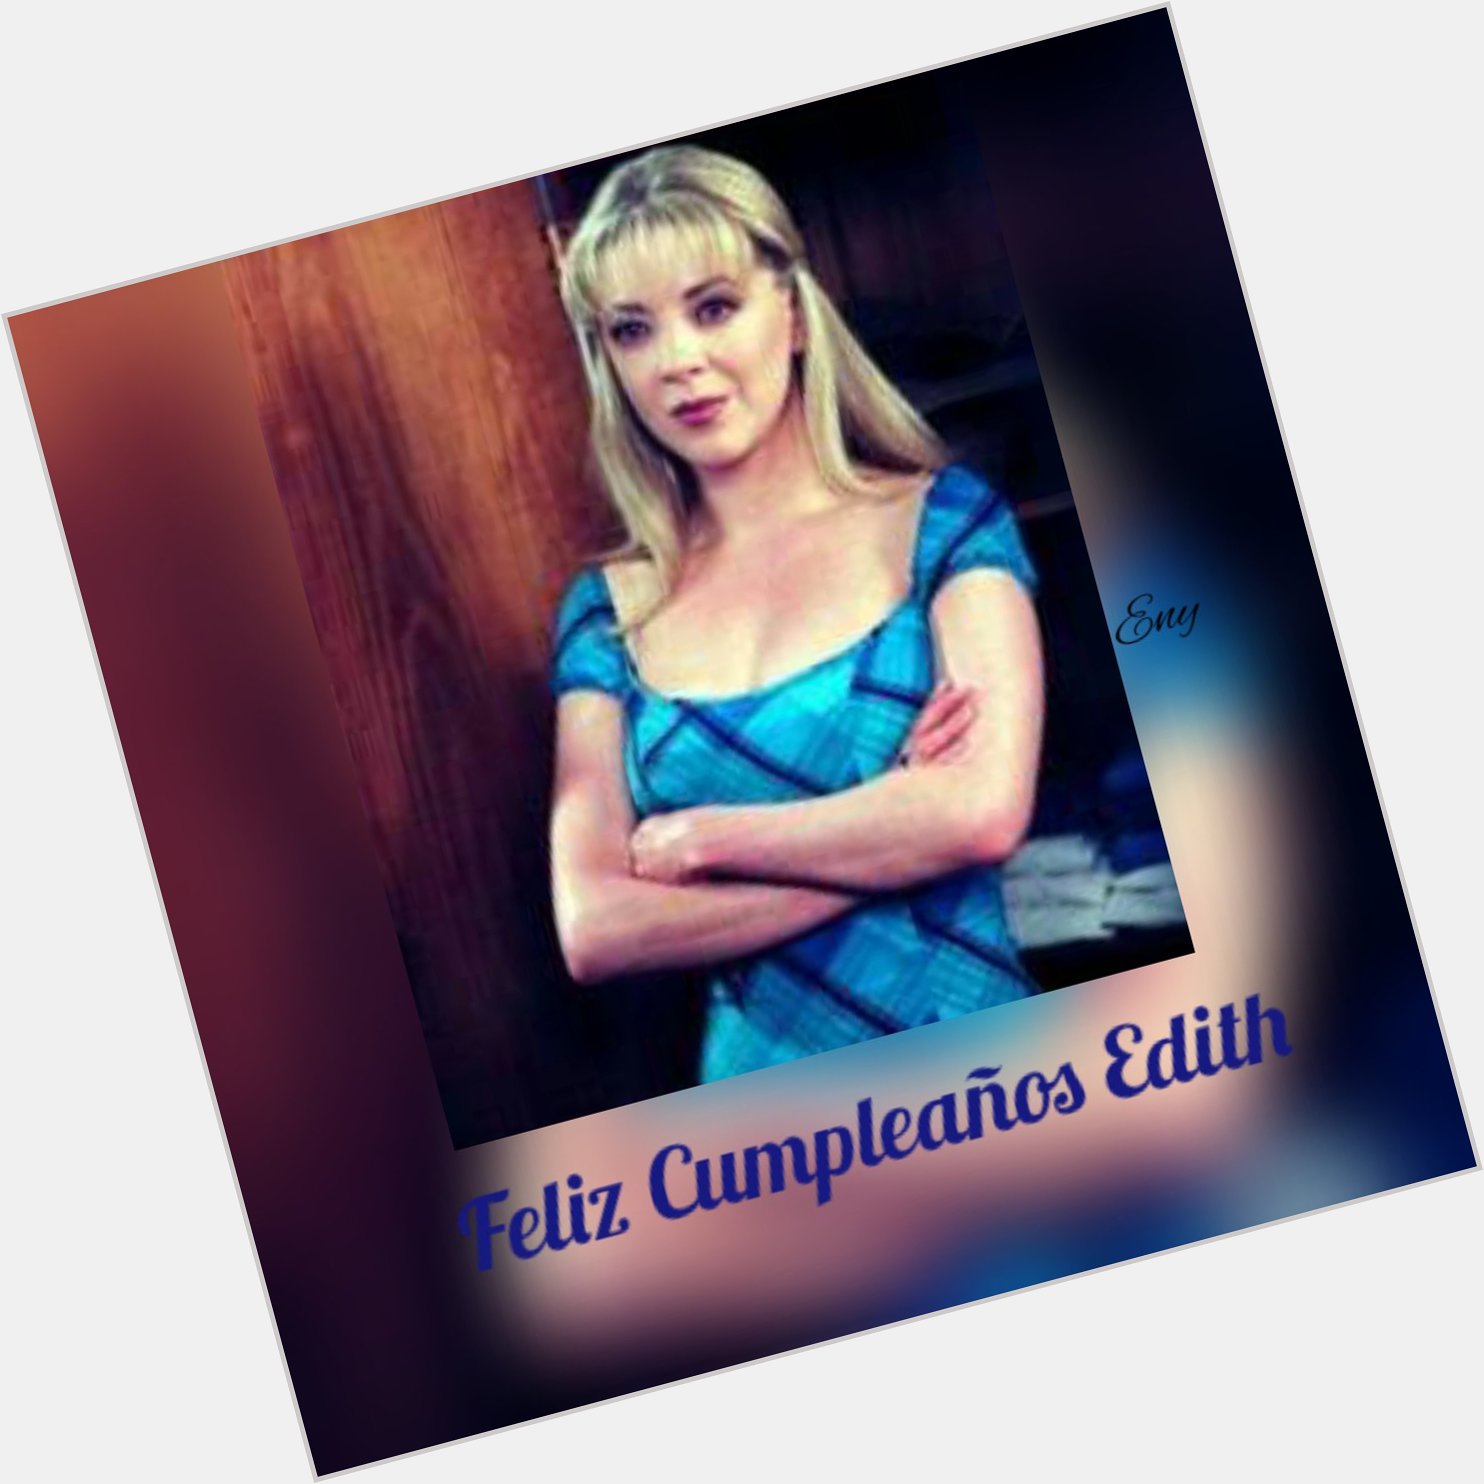 Happy Birthday Esperanza,
Feliz Cumpleaños Edith Gonzalez, 
Selamat Ulang Tahun Edith Gonzalez, 
Feliz Cumple Edith 